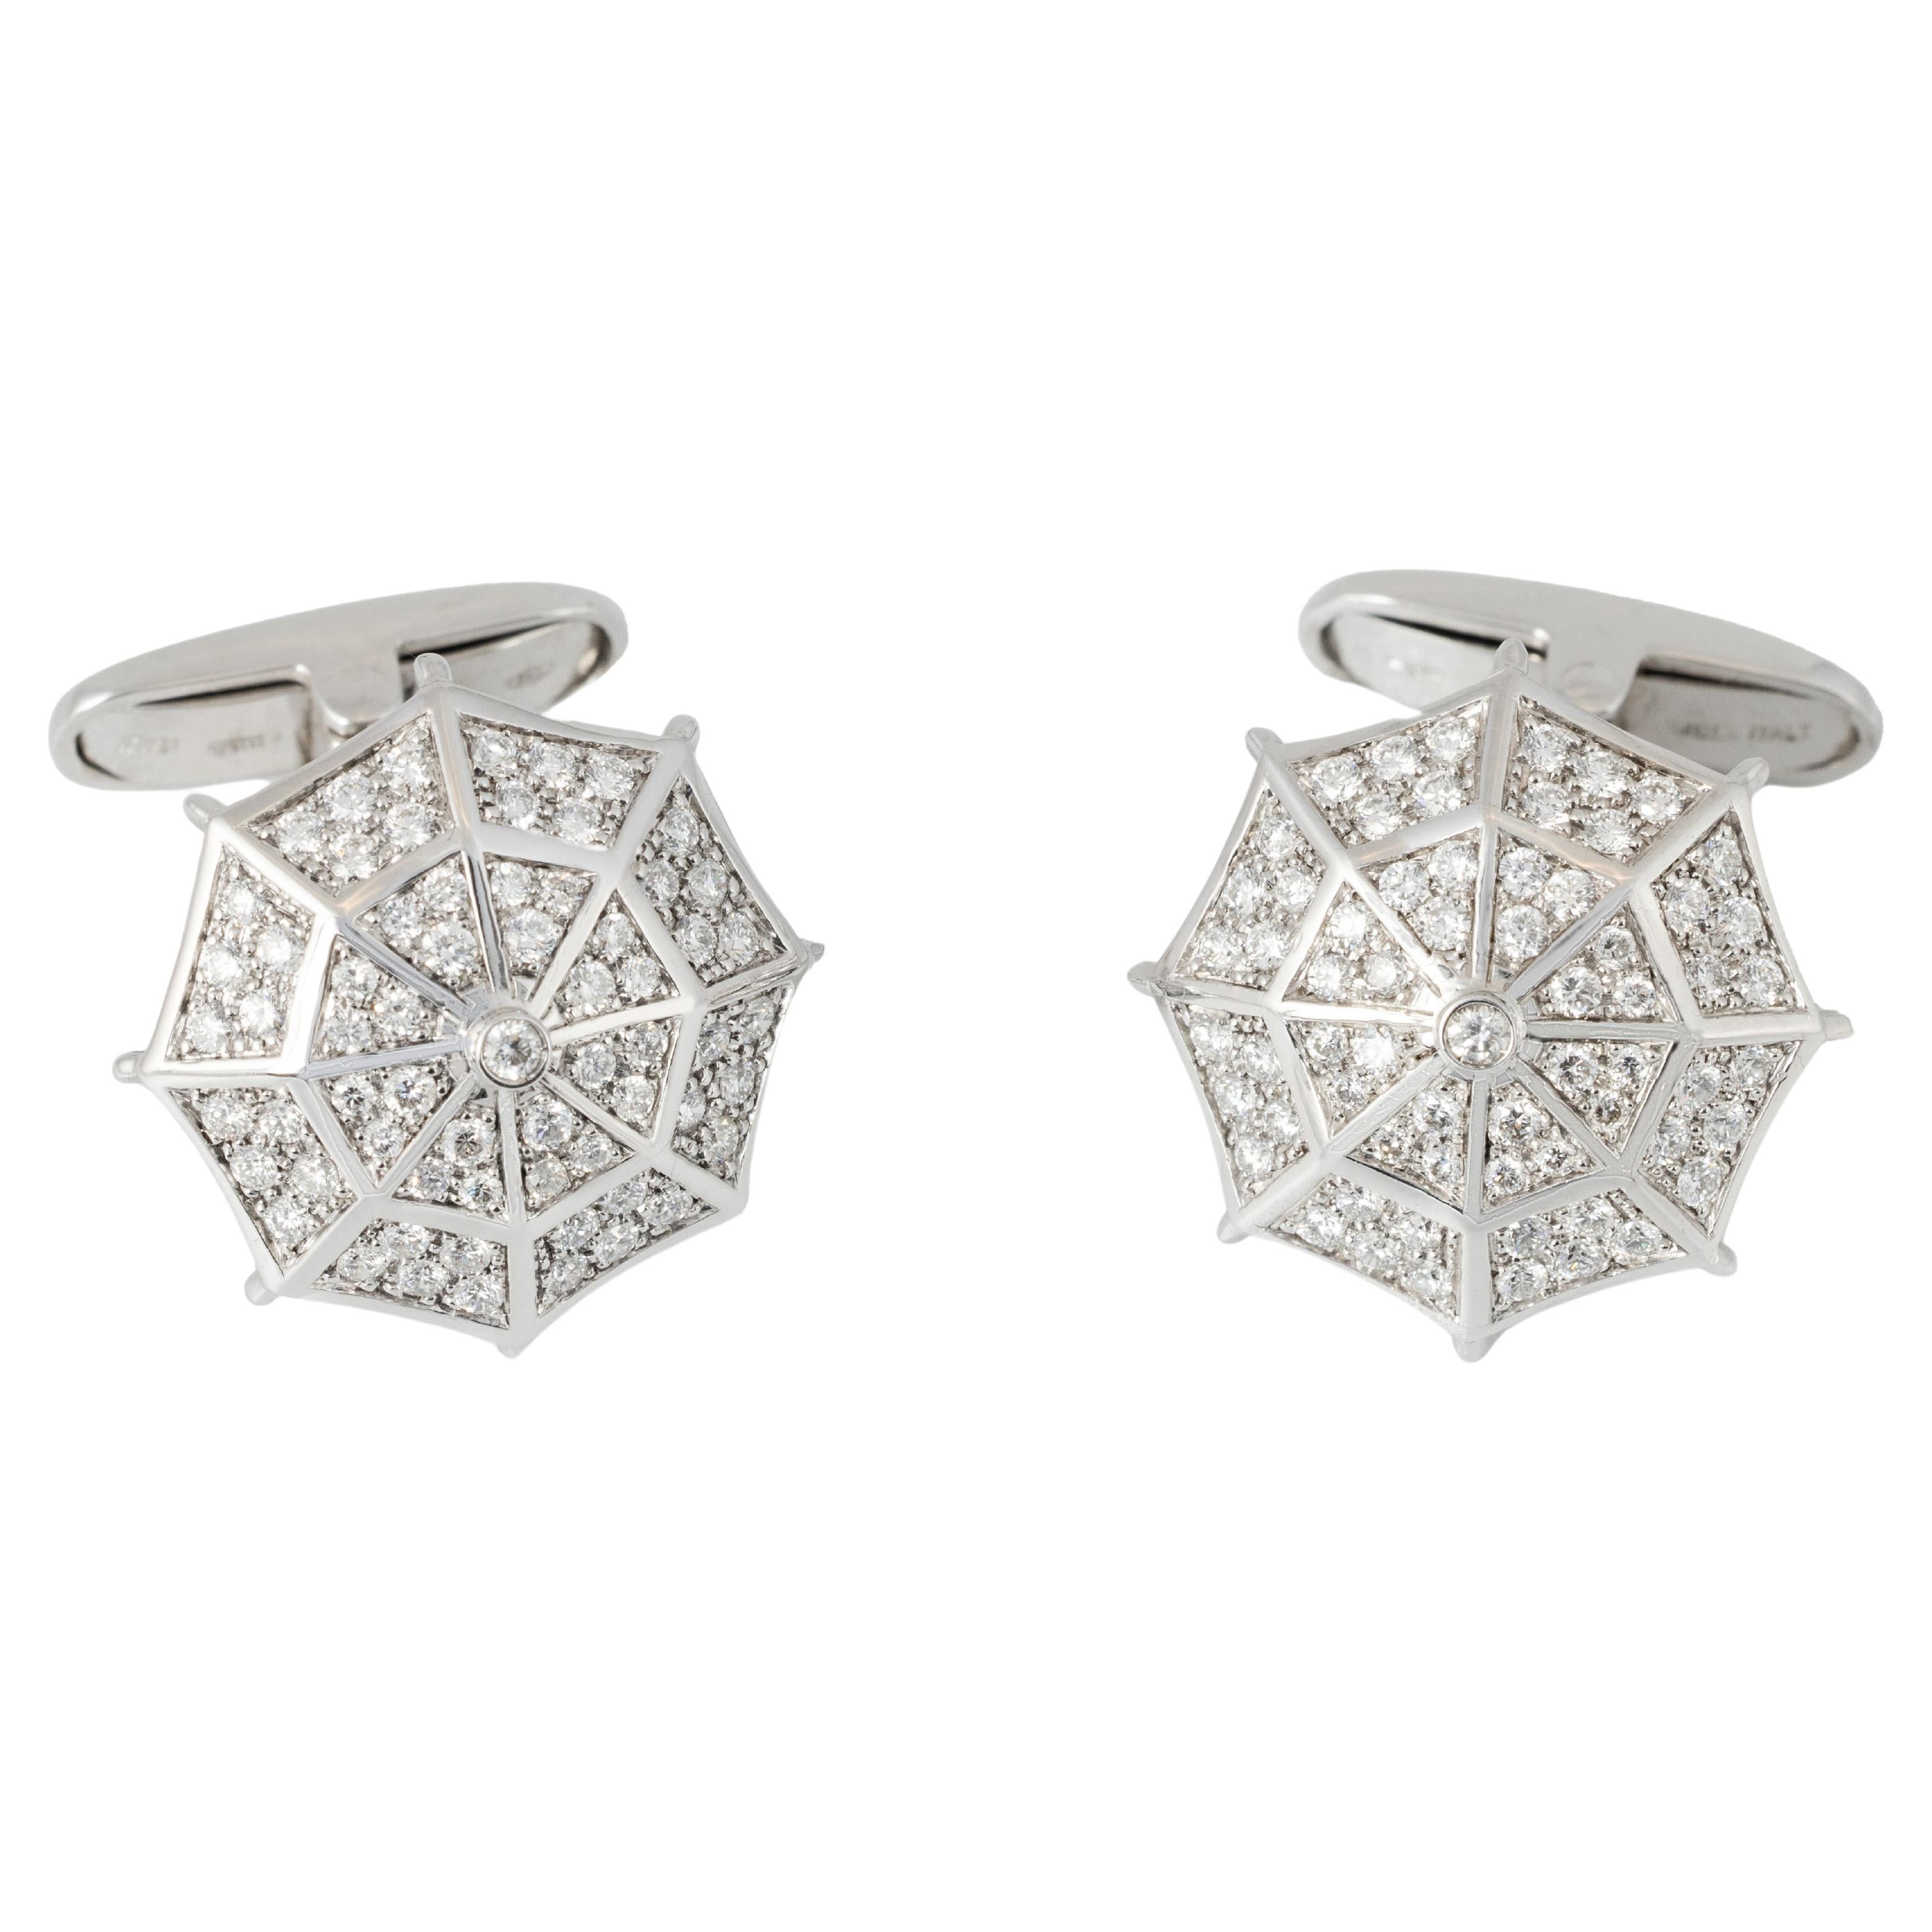 "Costis" Umbrella Collection Manschettenknöpfe WG - Pave' mit 1,19 Karat Diamanten 